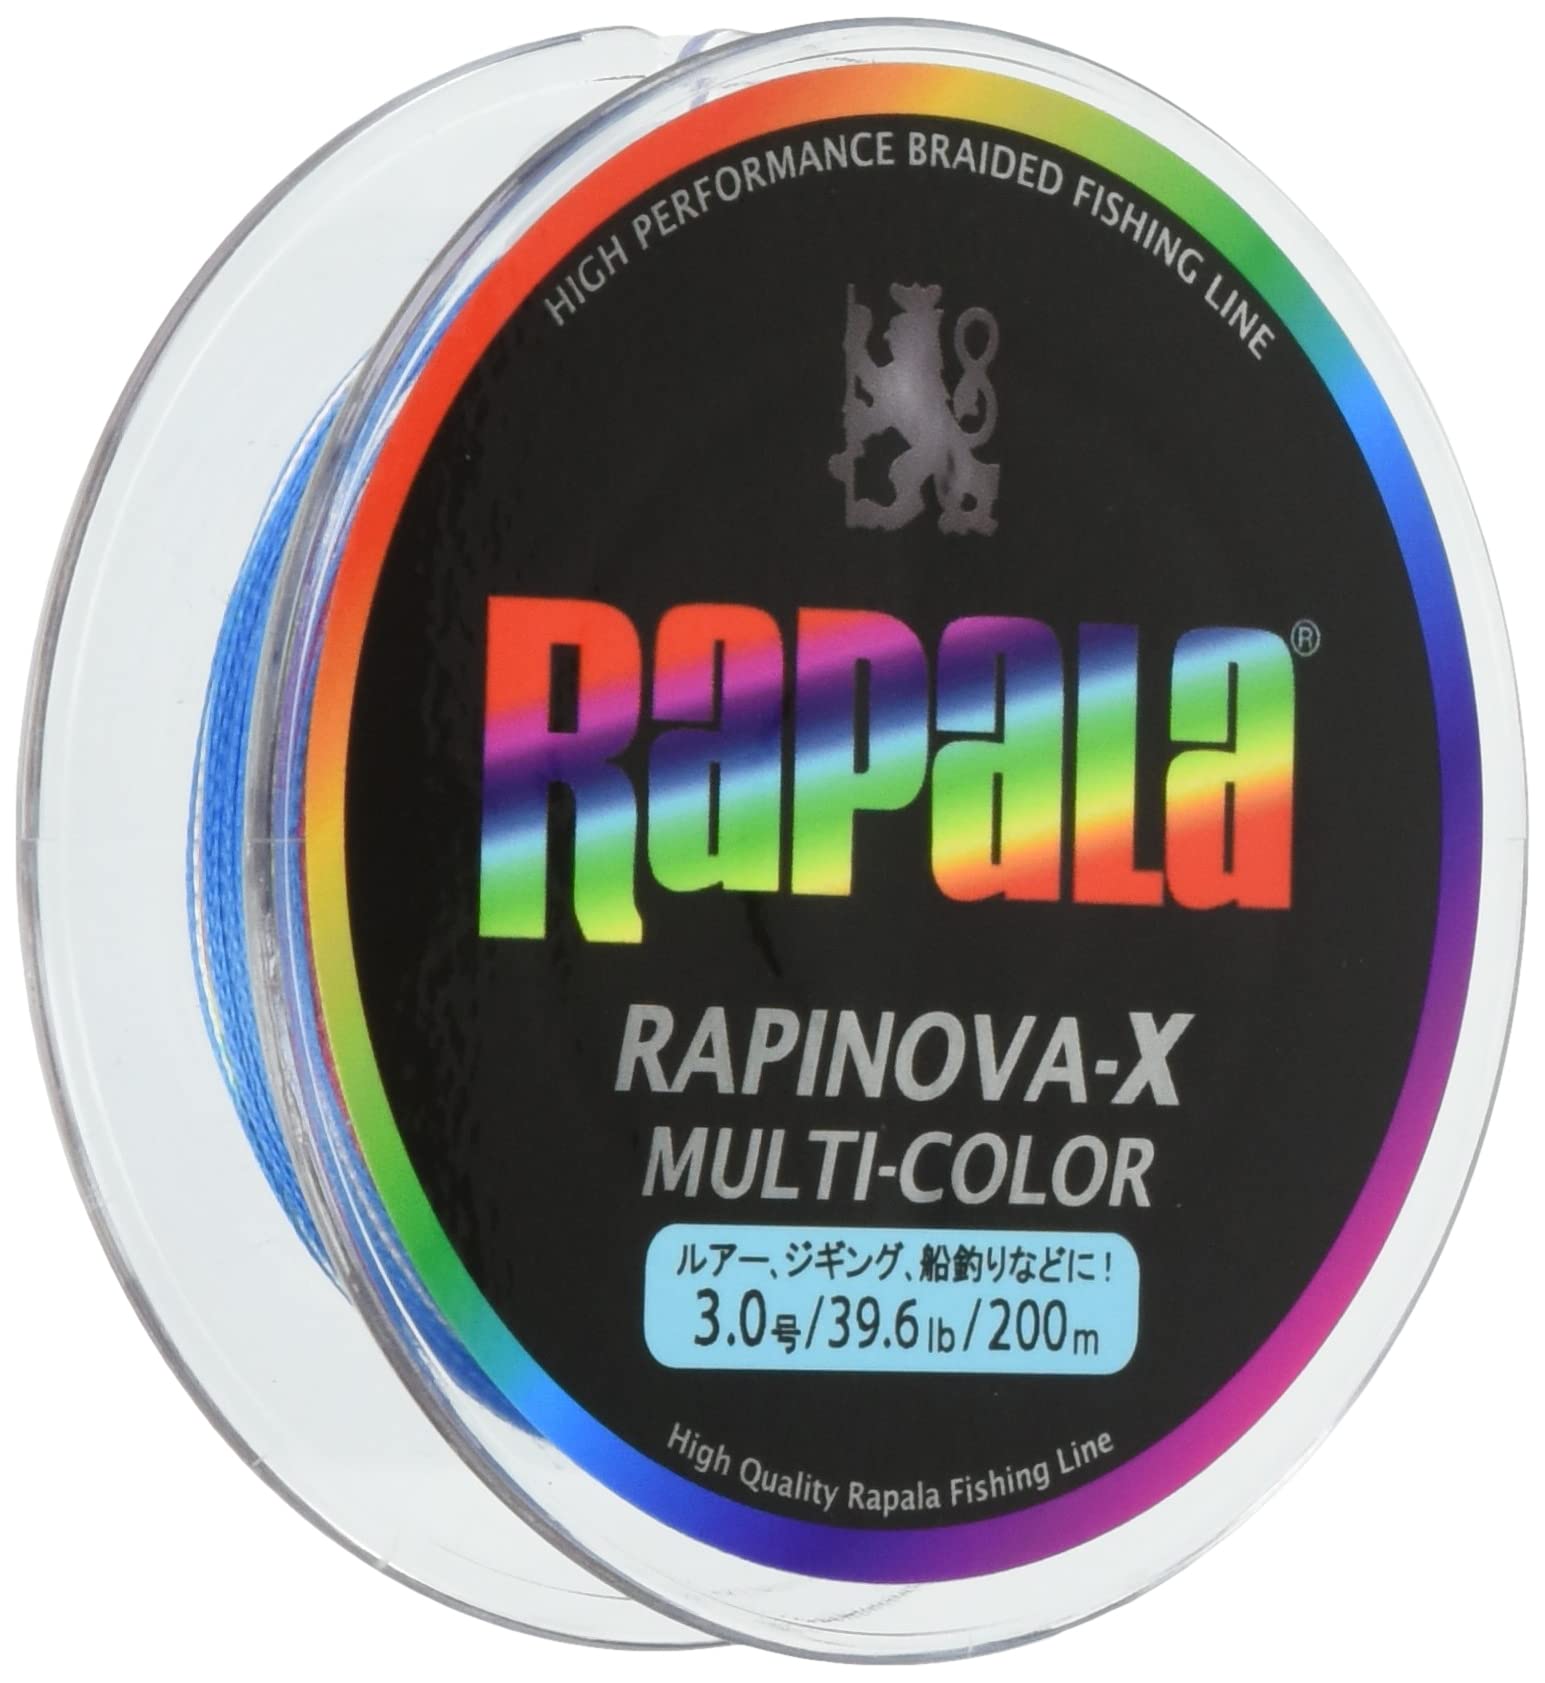 Rapala(ラパラ) PEライン ラピノヴァX マルチカラー 200m 3.0号 39.6lb 4本編み 10m毎に5色分け RXC200M30MC